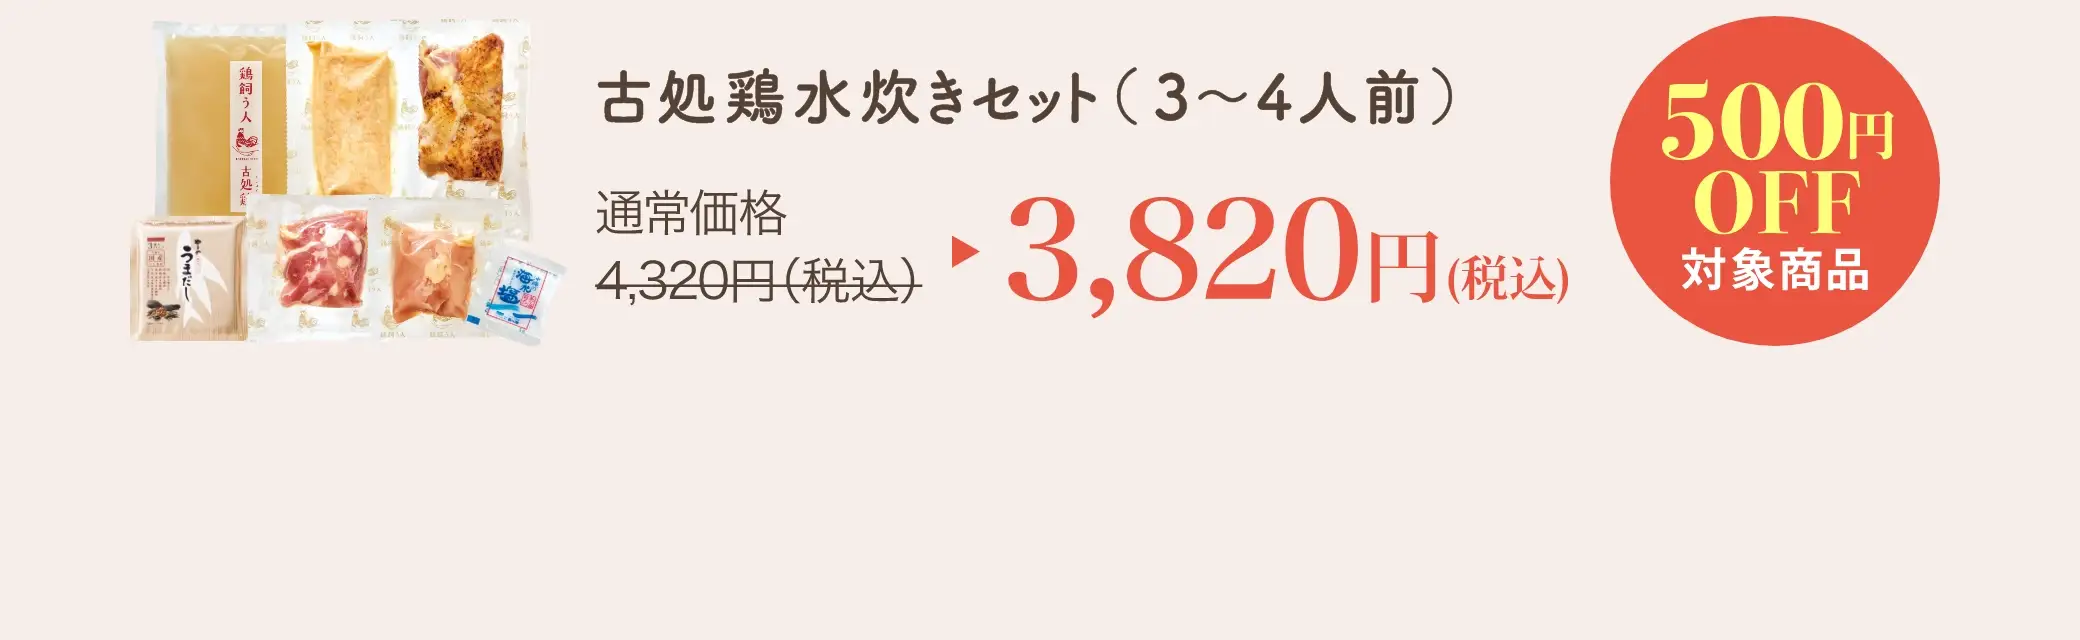 古処鶏水炊きセット(3~4人前) 3,820円(税込)